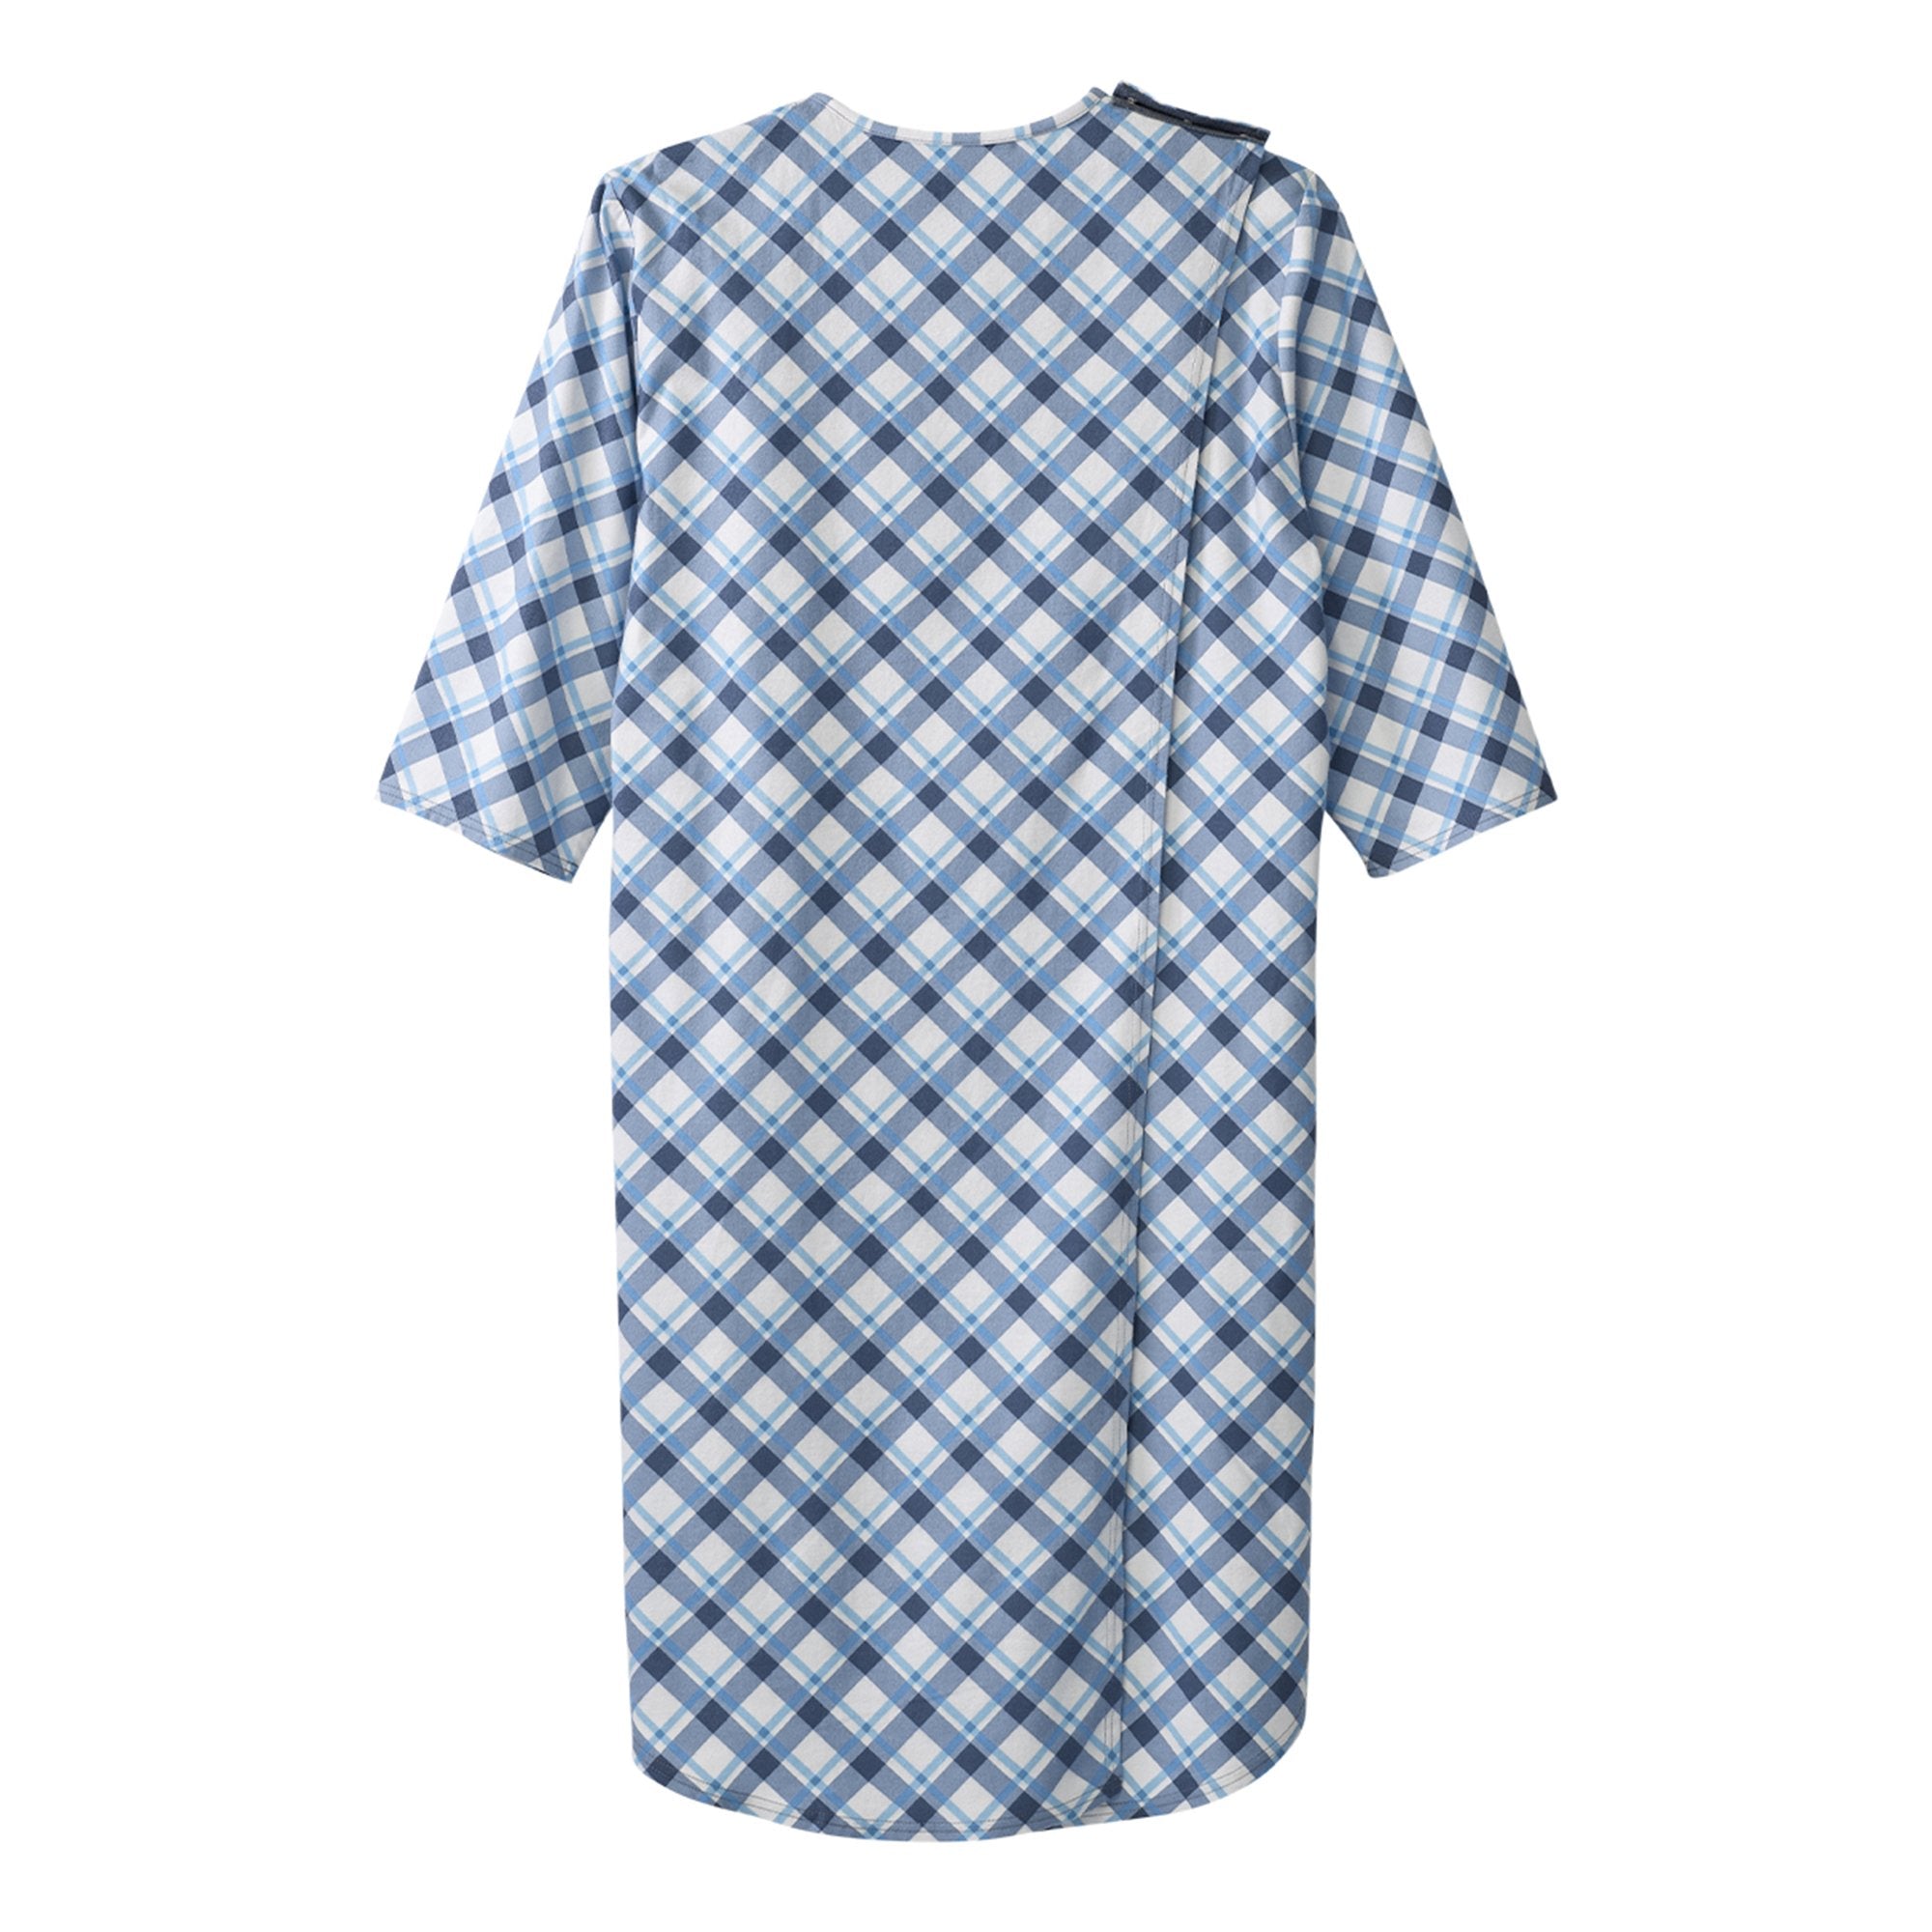 Silverts® Shoulder Snap Patient Exam Gown, X-Large, Diagonal Blue Plaid (1 Unit)